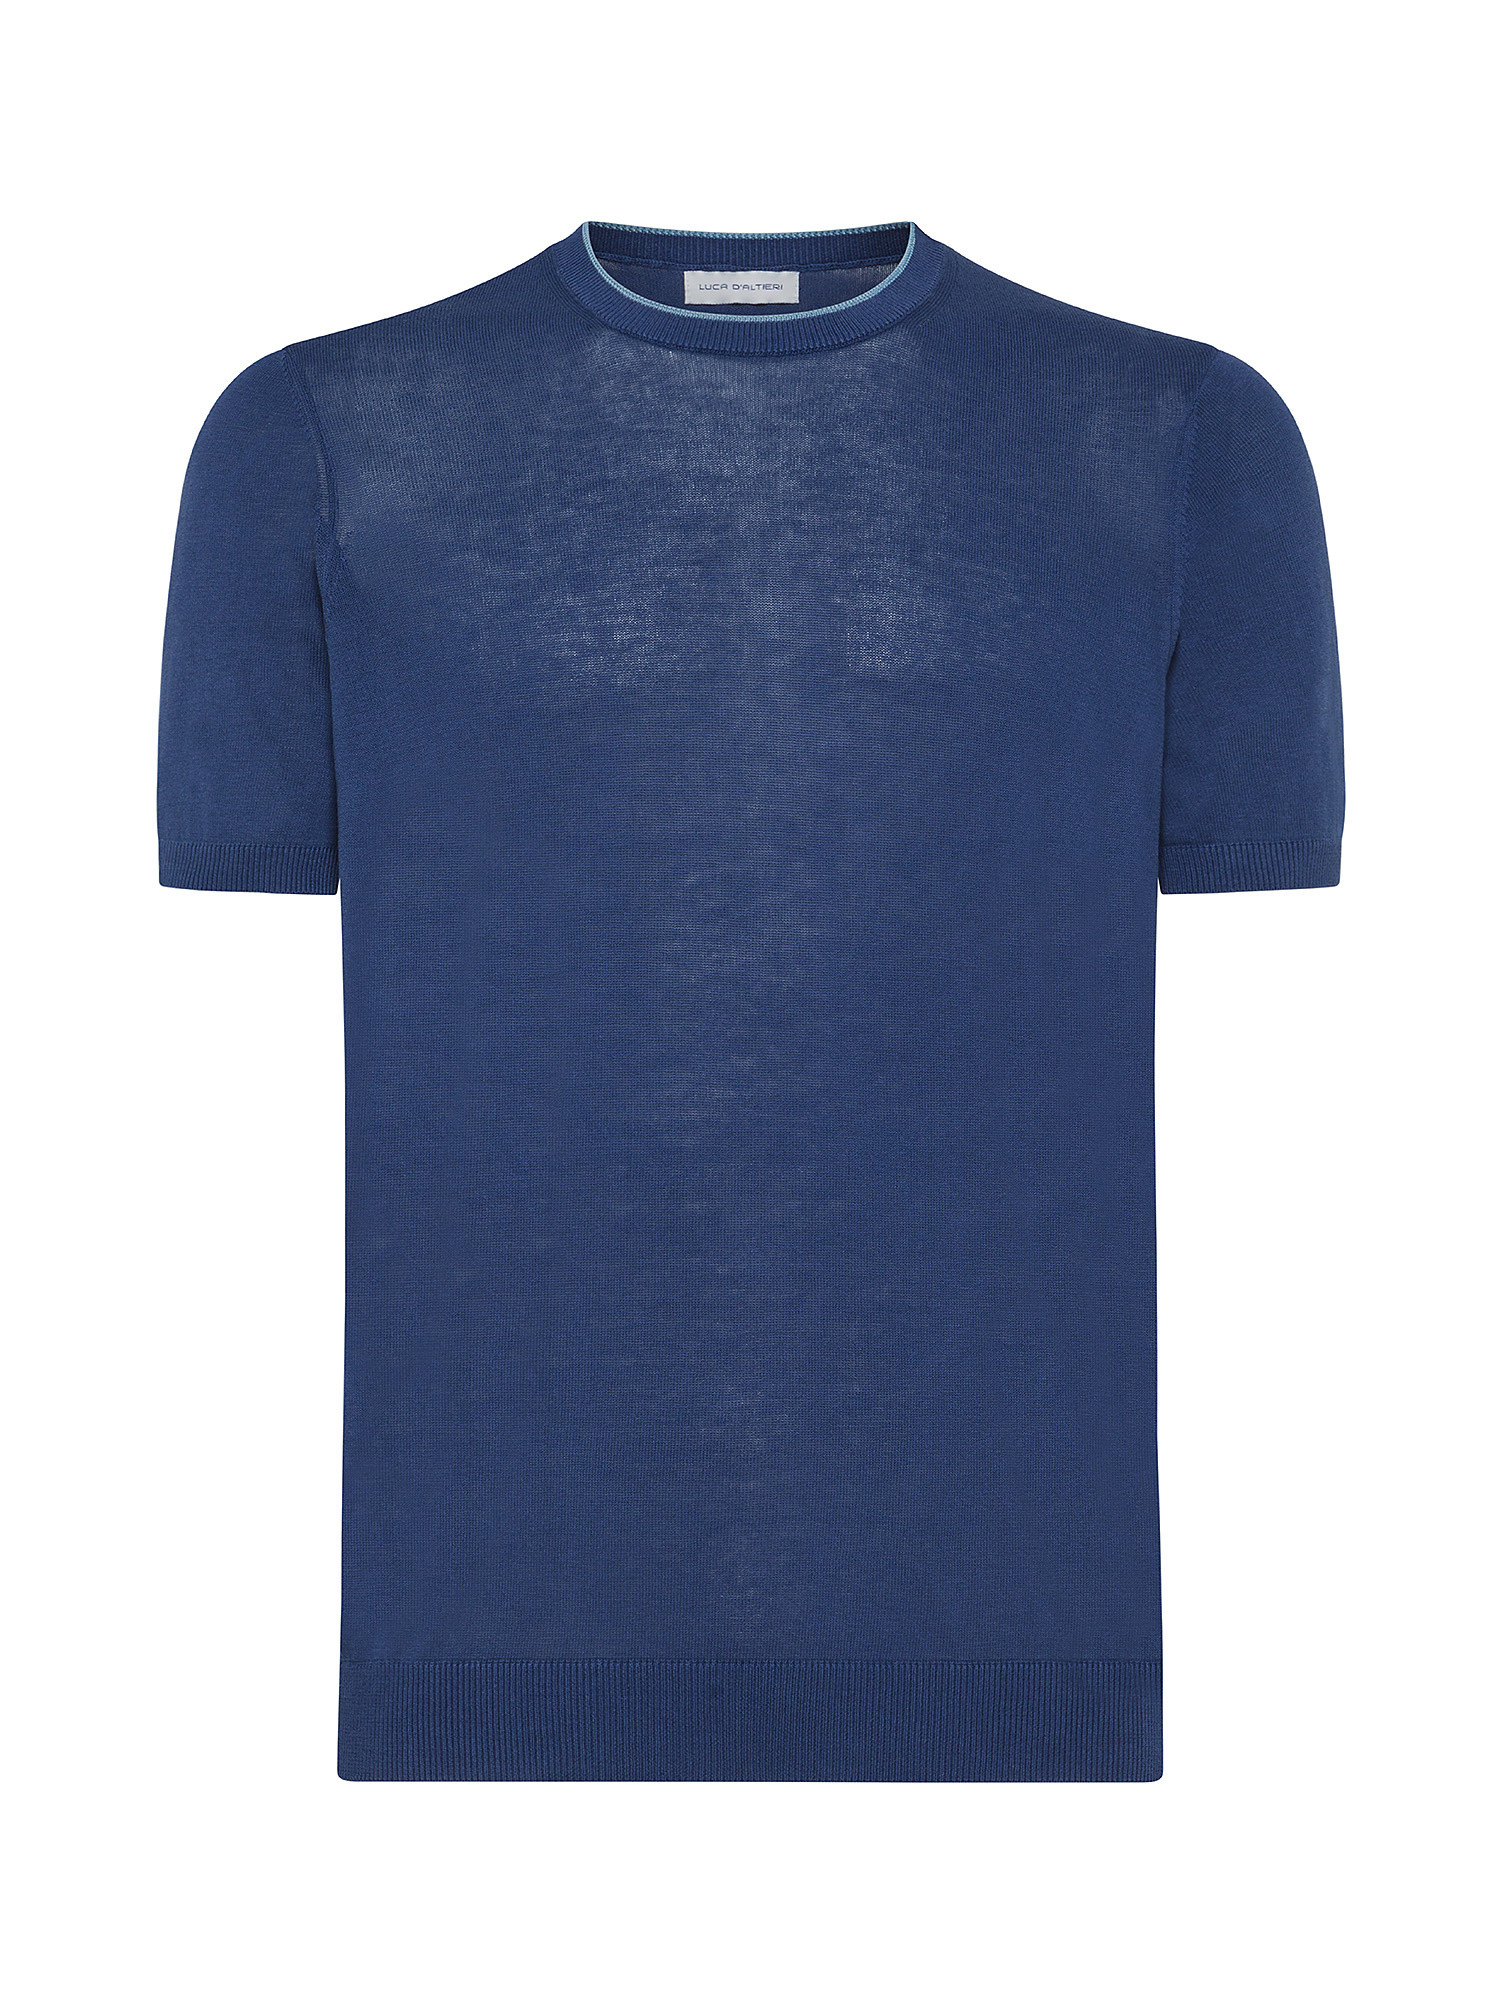 Luca D'Altieri - Cotton crepe T-shirt, Light Blue, large image number 0